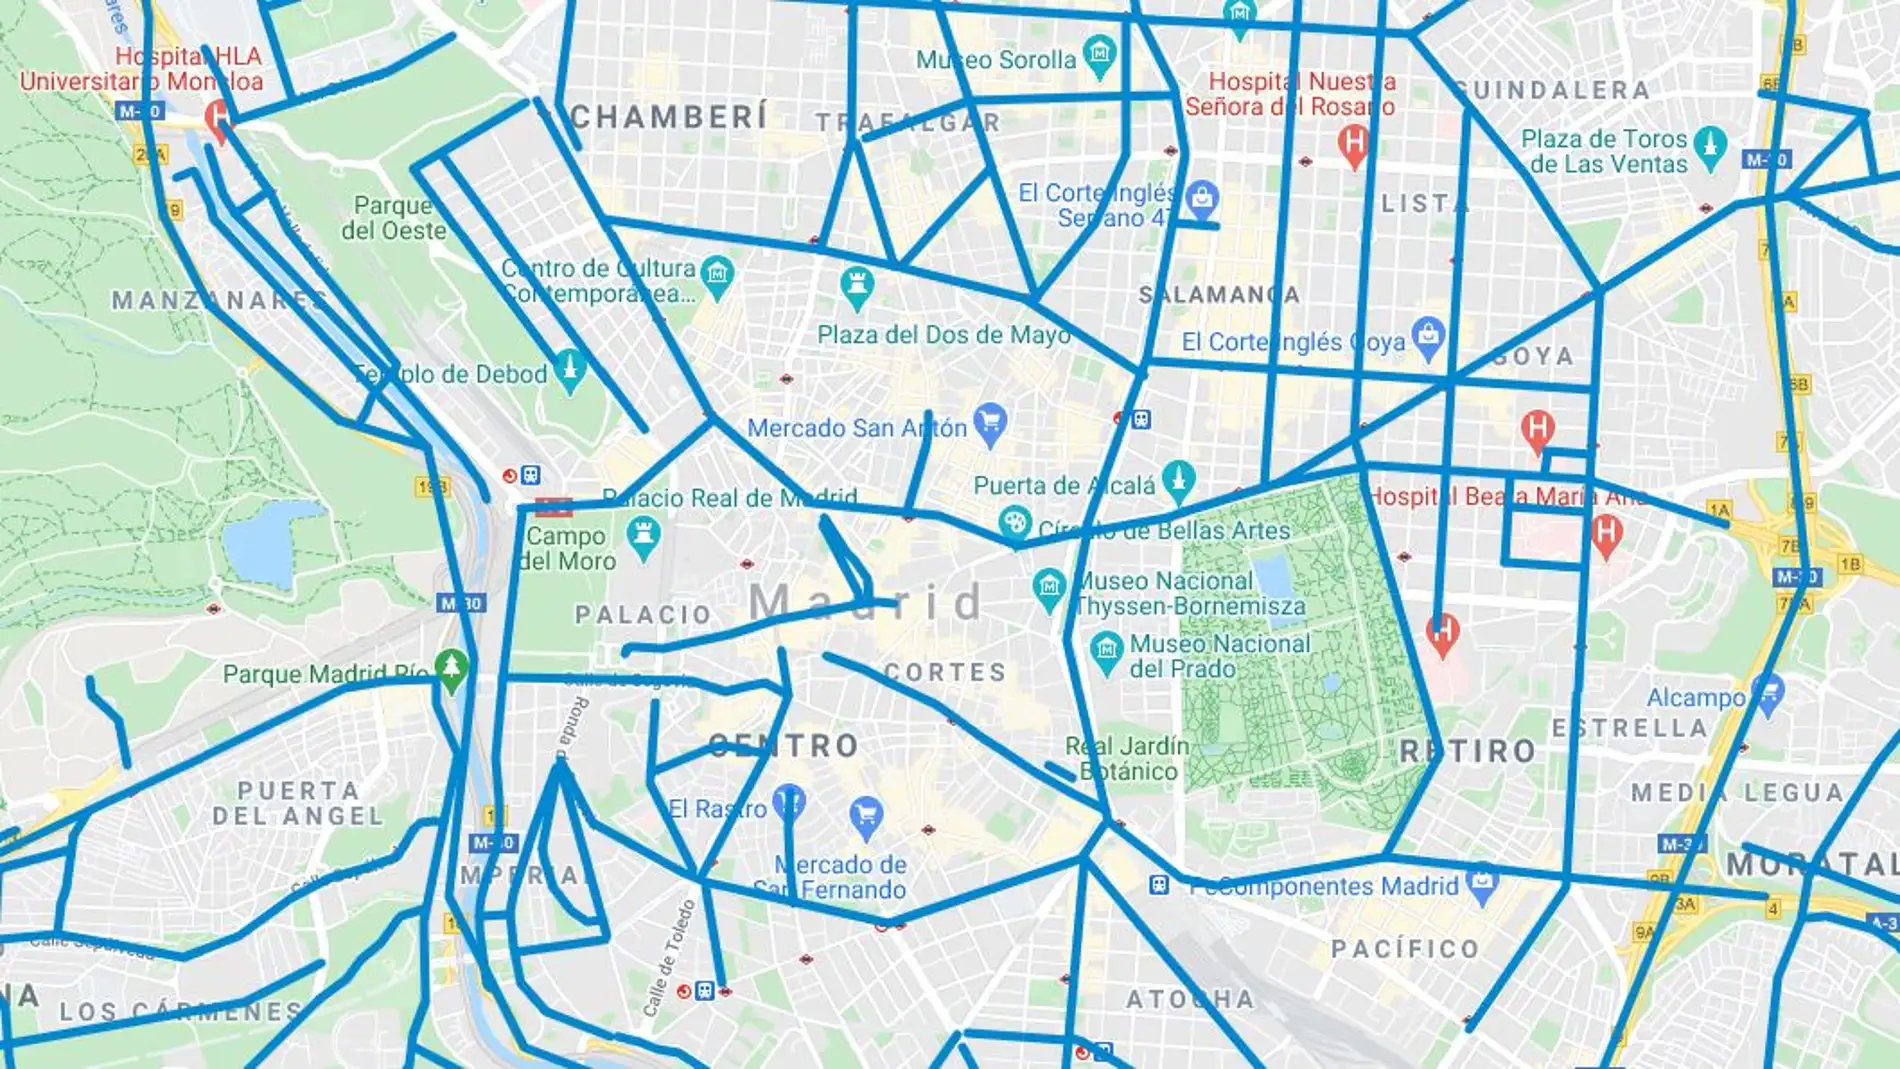 Mapa de calles cortadas y calles limpias en Madrid hoy en tiempo real